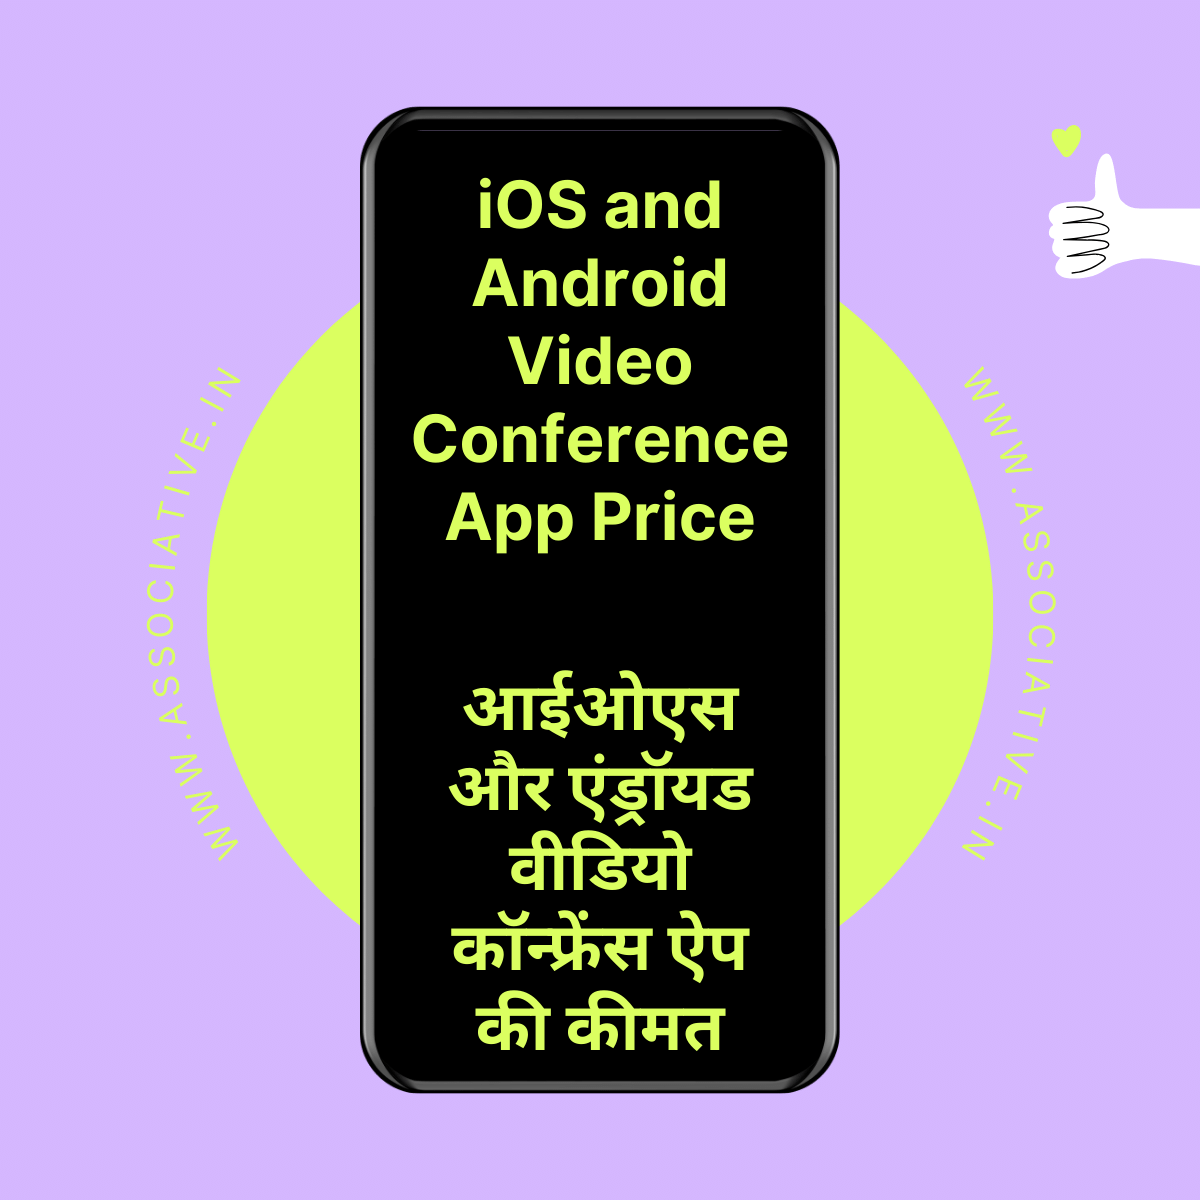 iOS and Android Video Conference App Price

आईओएस और एंड्रॉयड वीडियो कॉन्फ्रेंस ऐप की कीमत